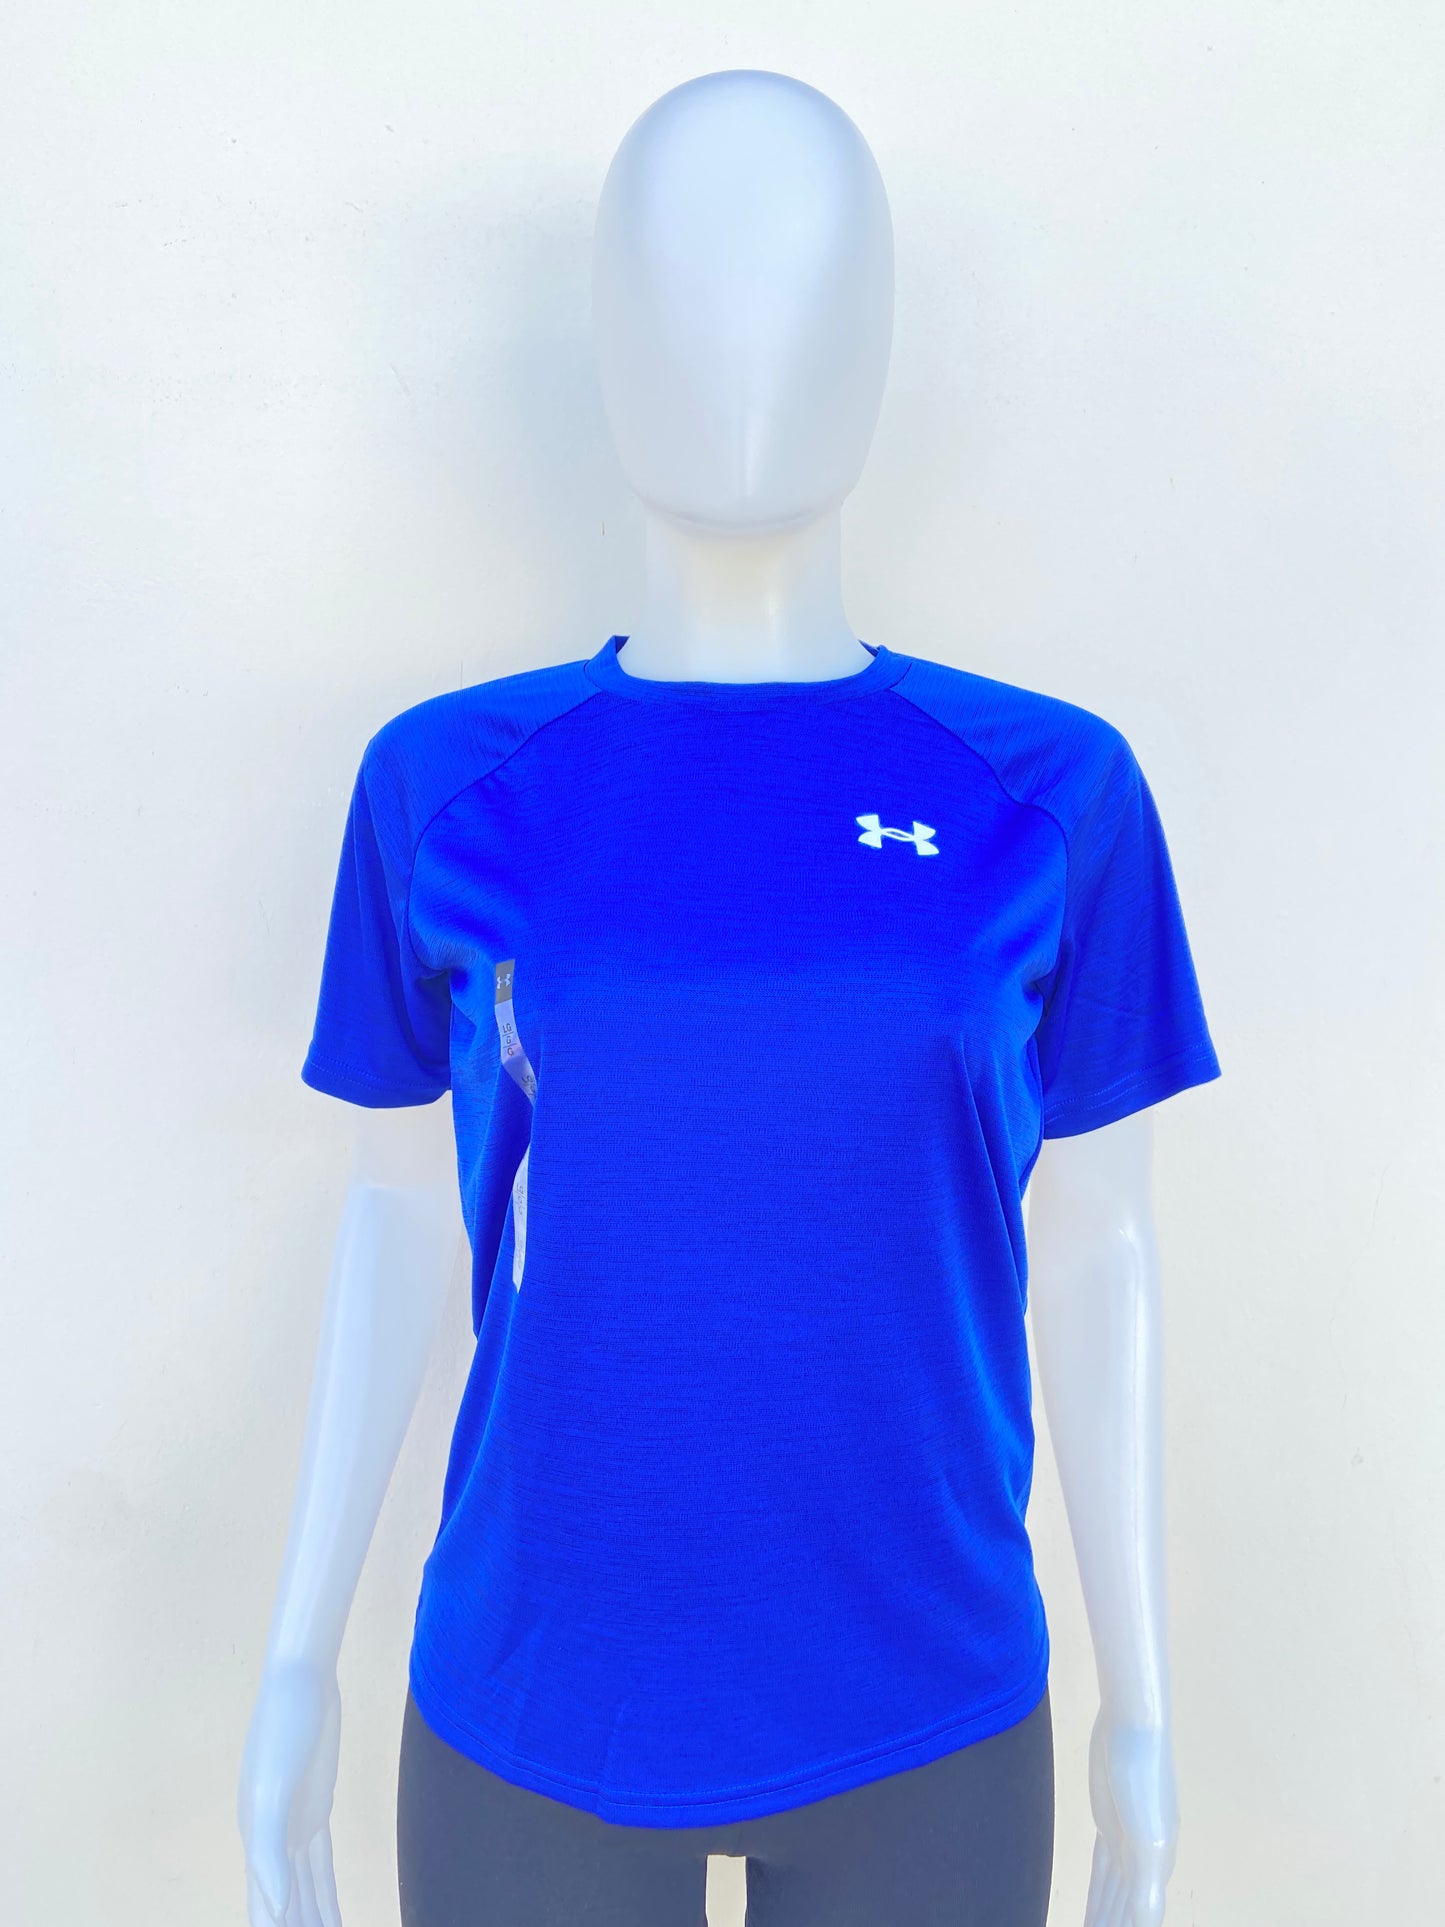 T-shirt Under Armour original azul con logotipo de la marca al lado.